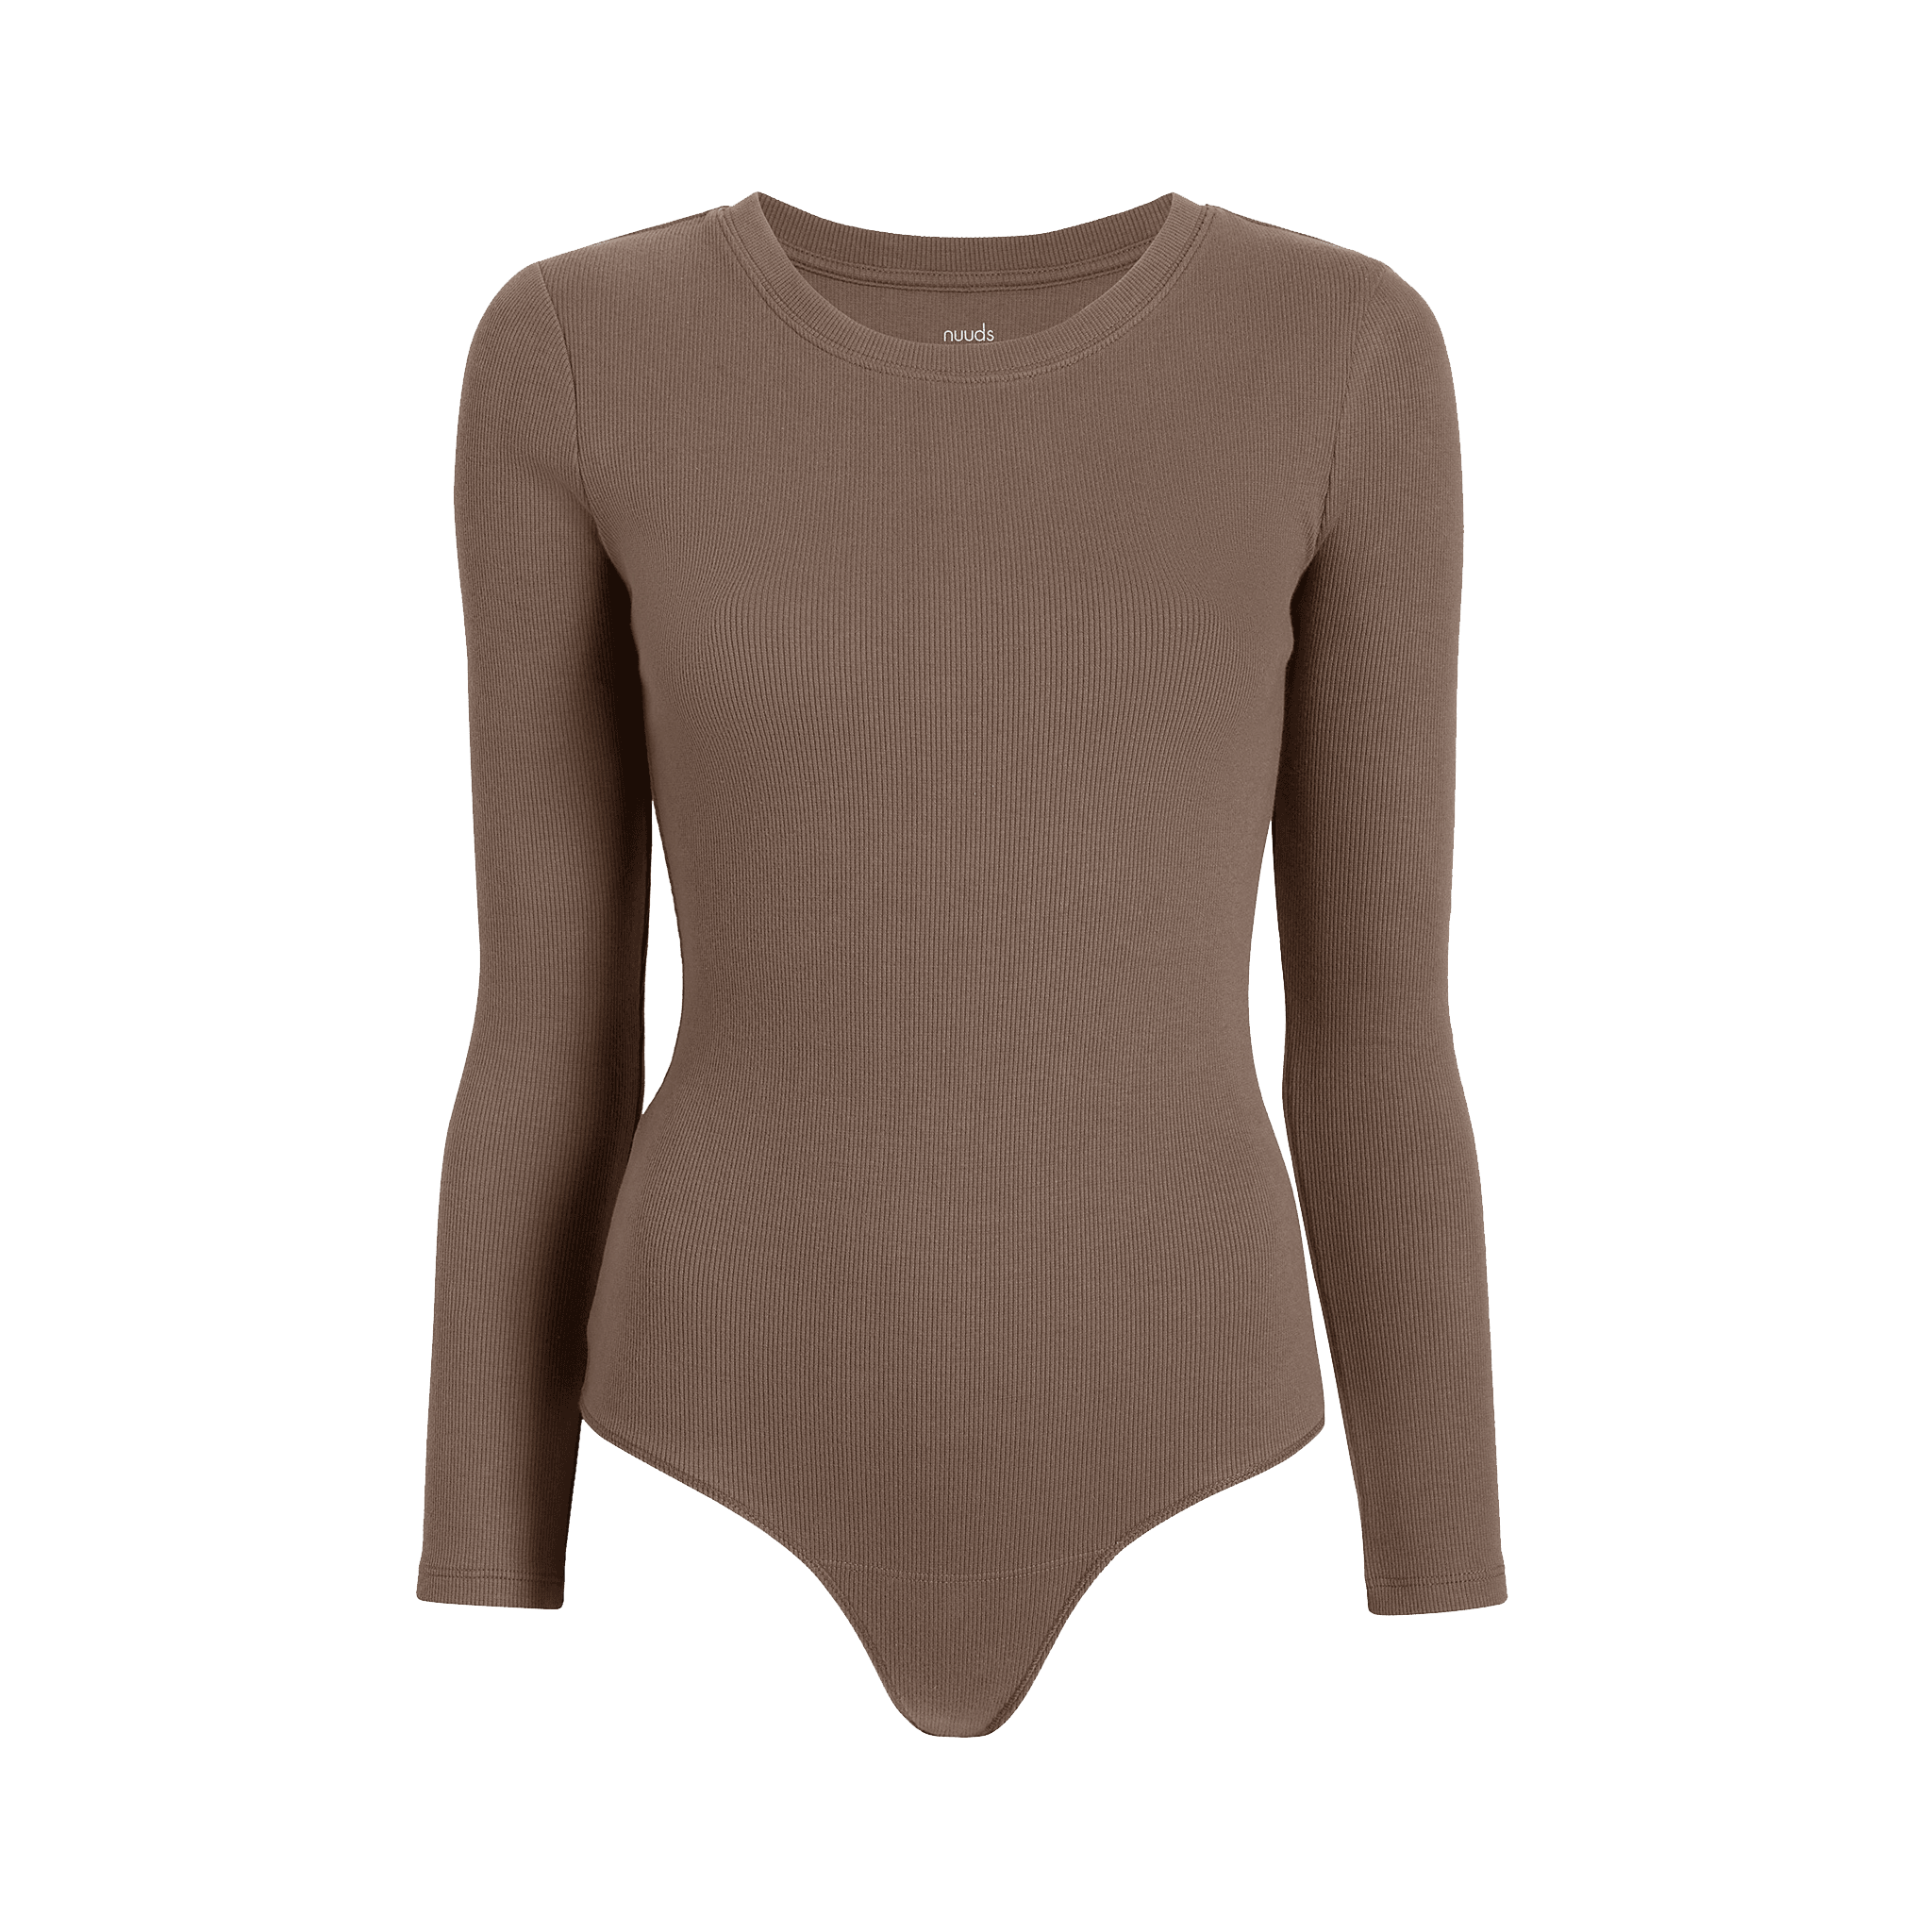 Nuuds- Brown Off Shoulder Bodysuit